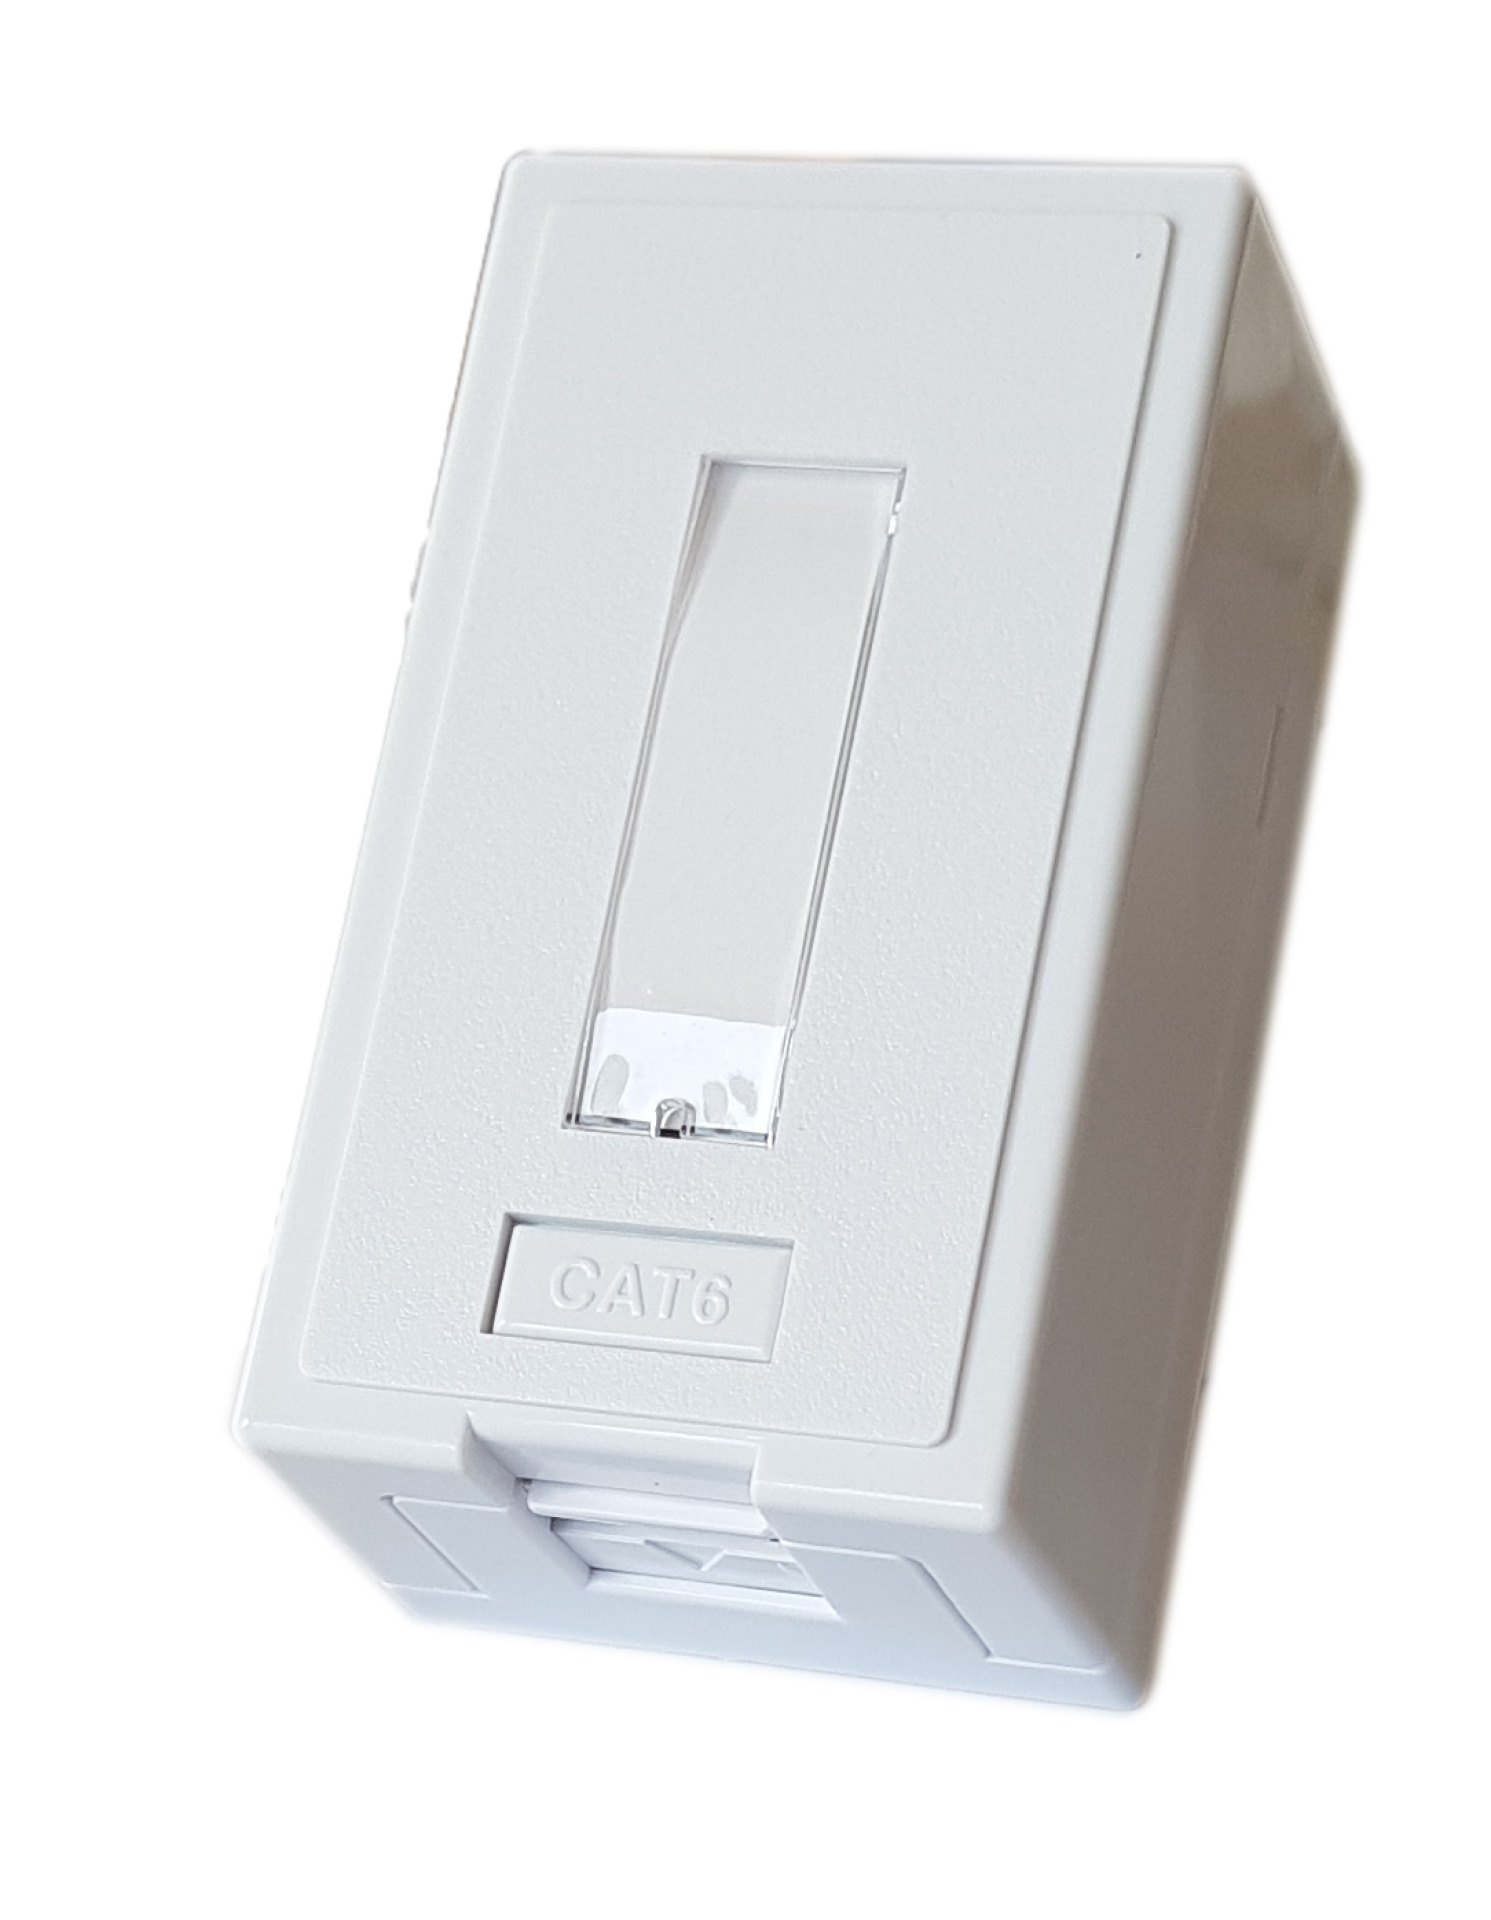 Officebox for 1 x RJ45 Keystone w shutter,White RAL9010